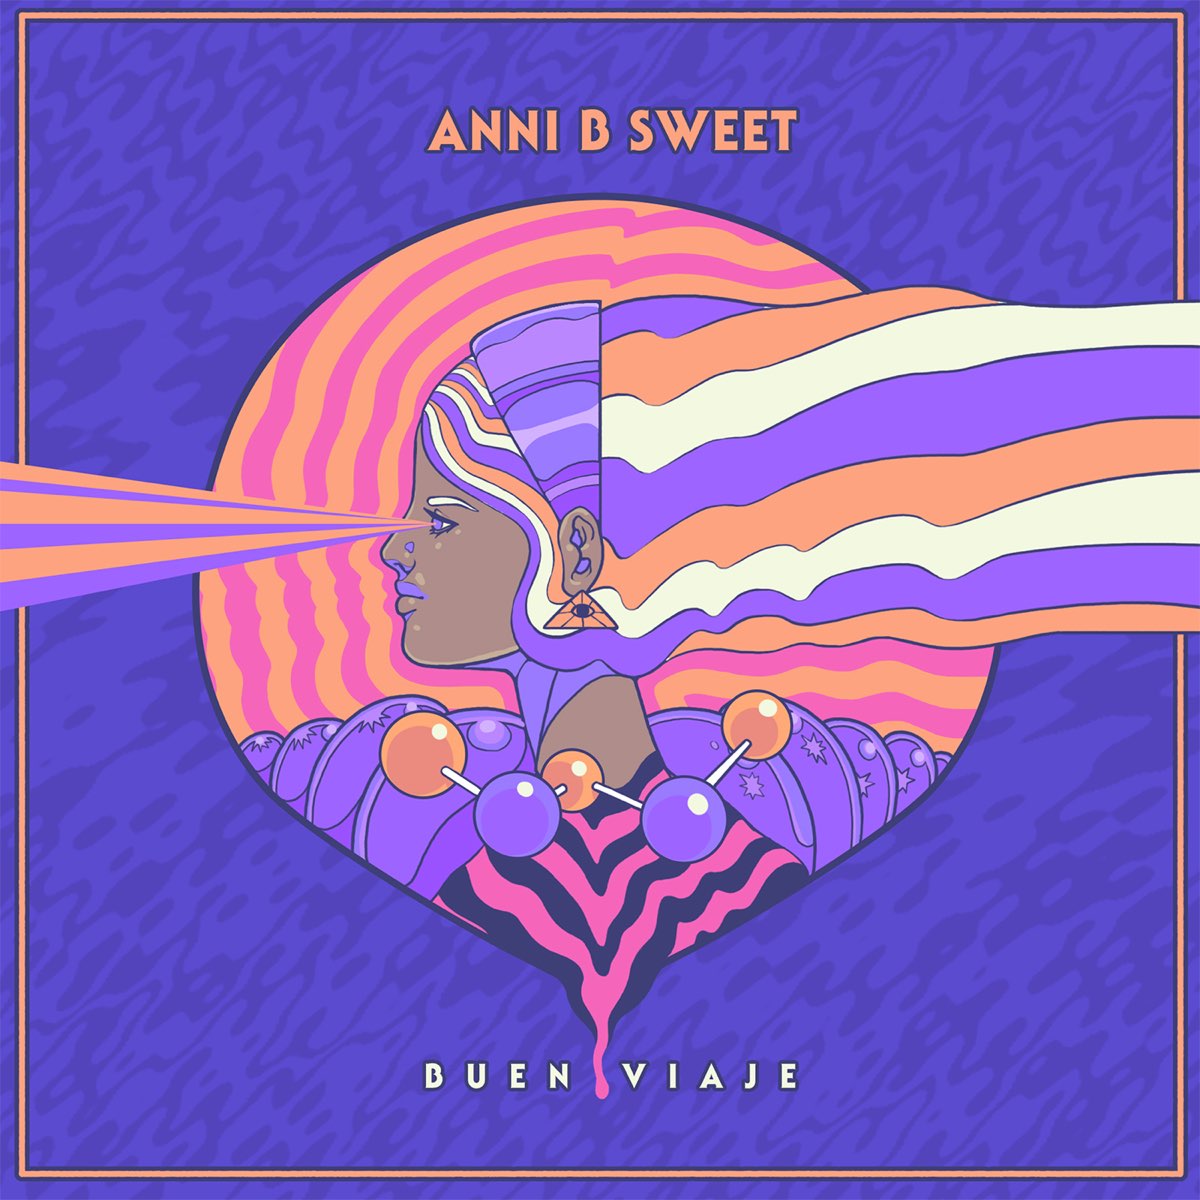 Buen Viaje - Single by Anni B Sweet on Apple Music